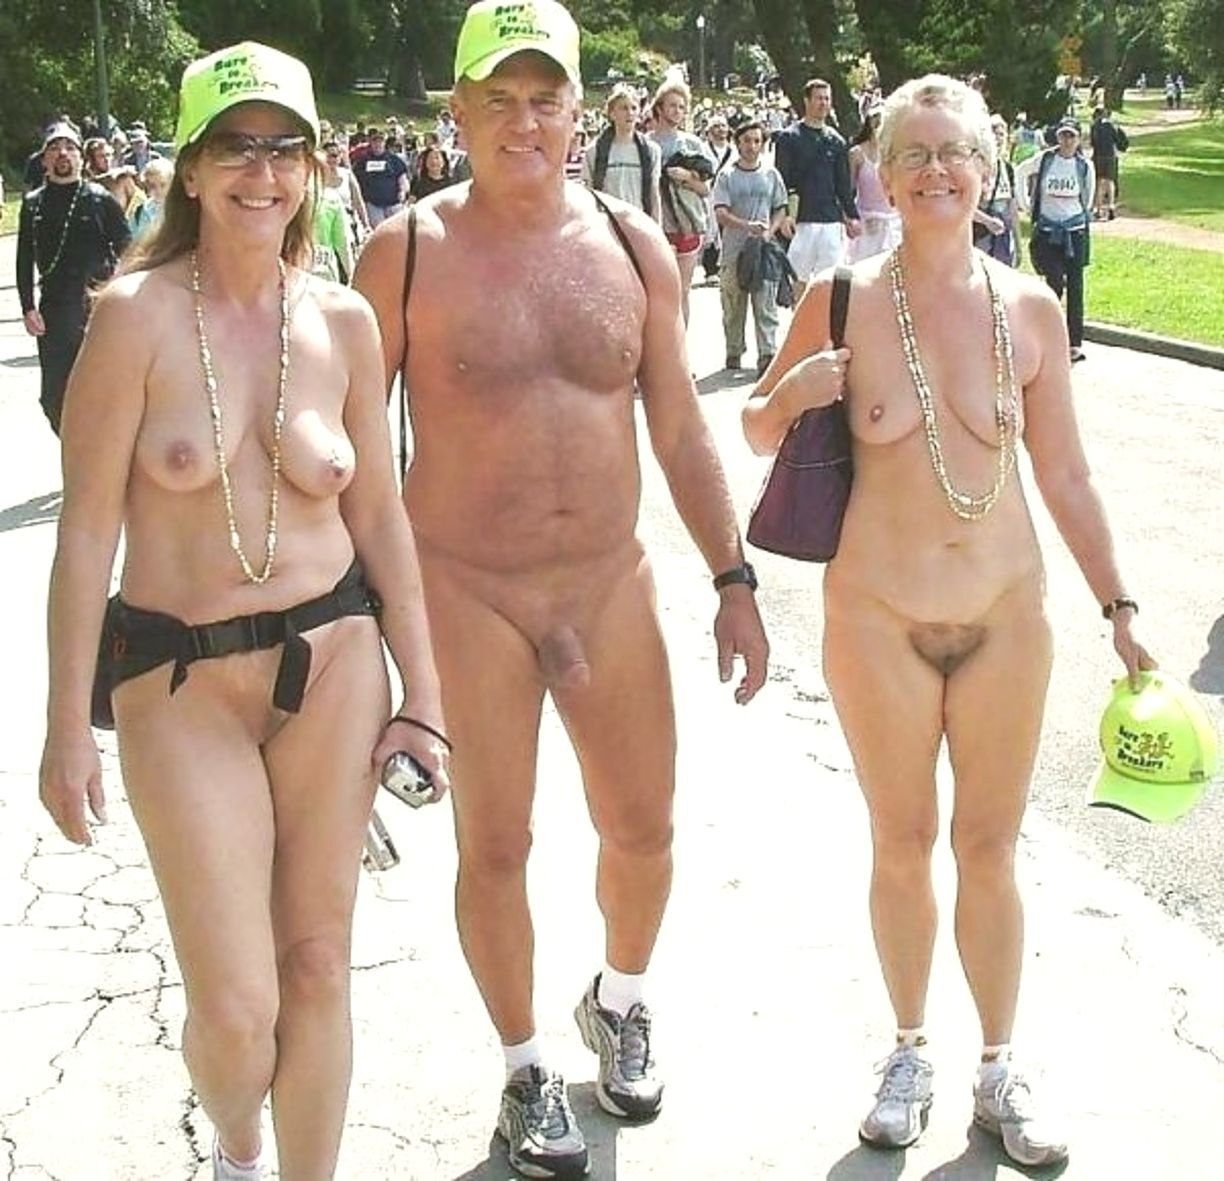 Femmes nues dans la rue image